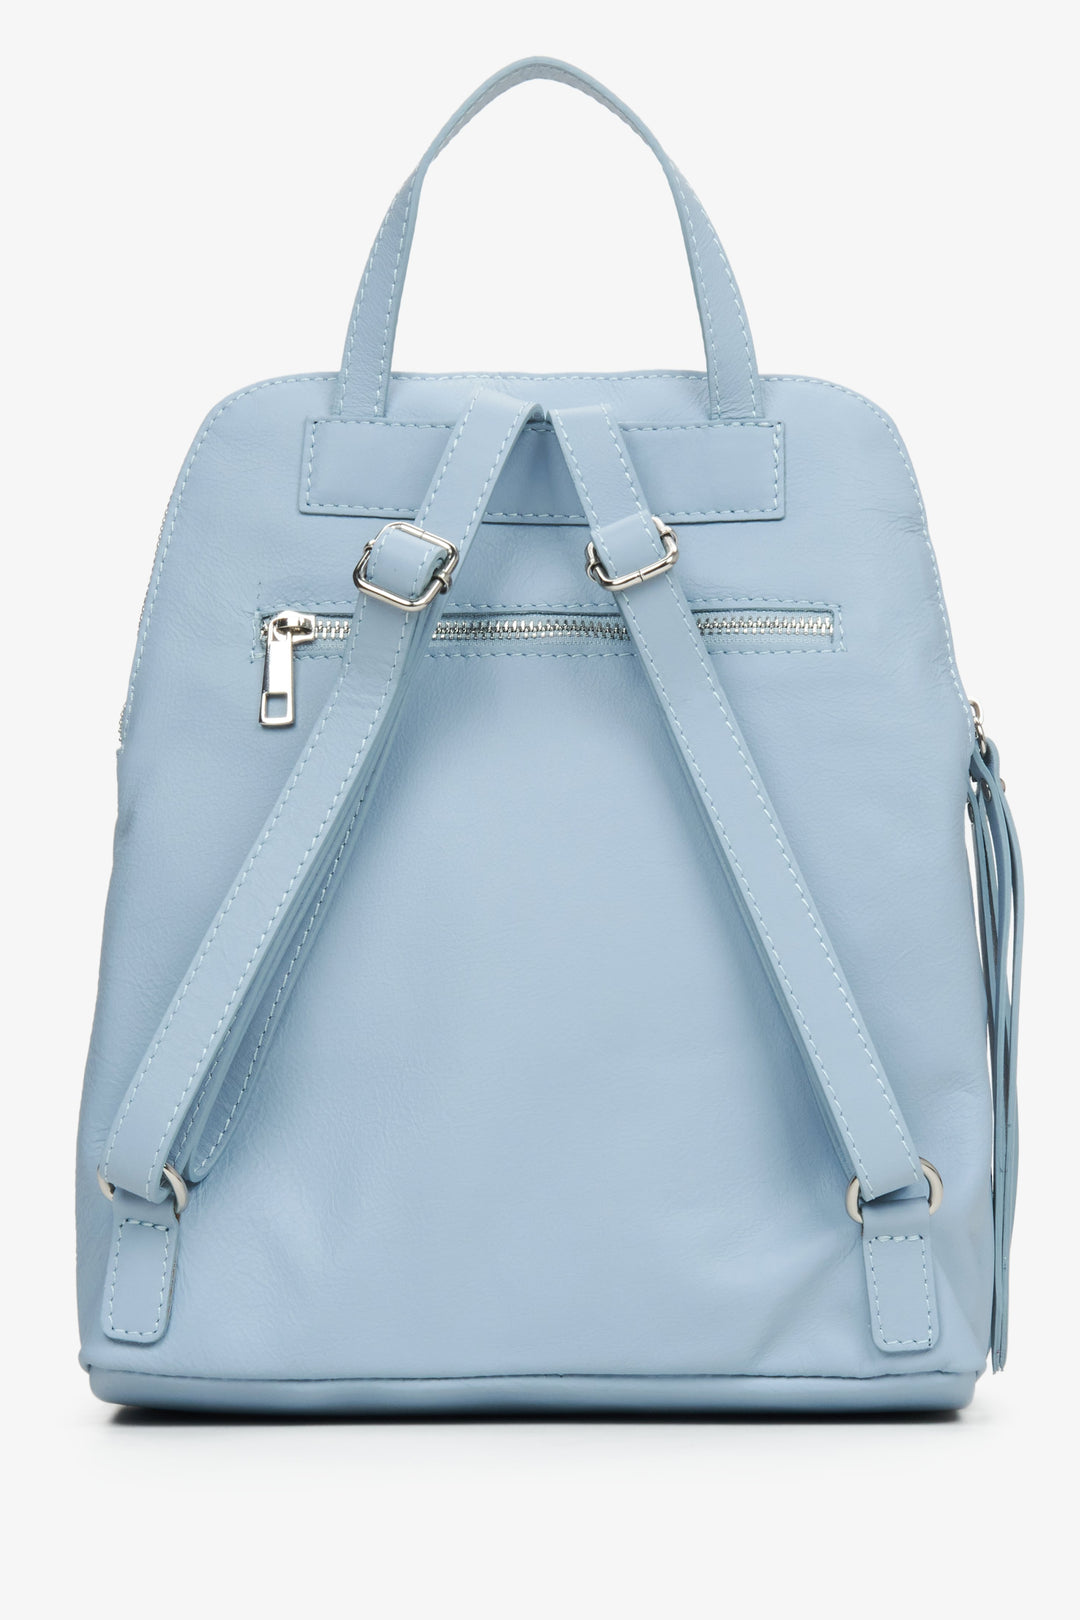 Skórzany, jasnoniebieski plecak damskie marki Estro - zbliżenie na tył modelu.